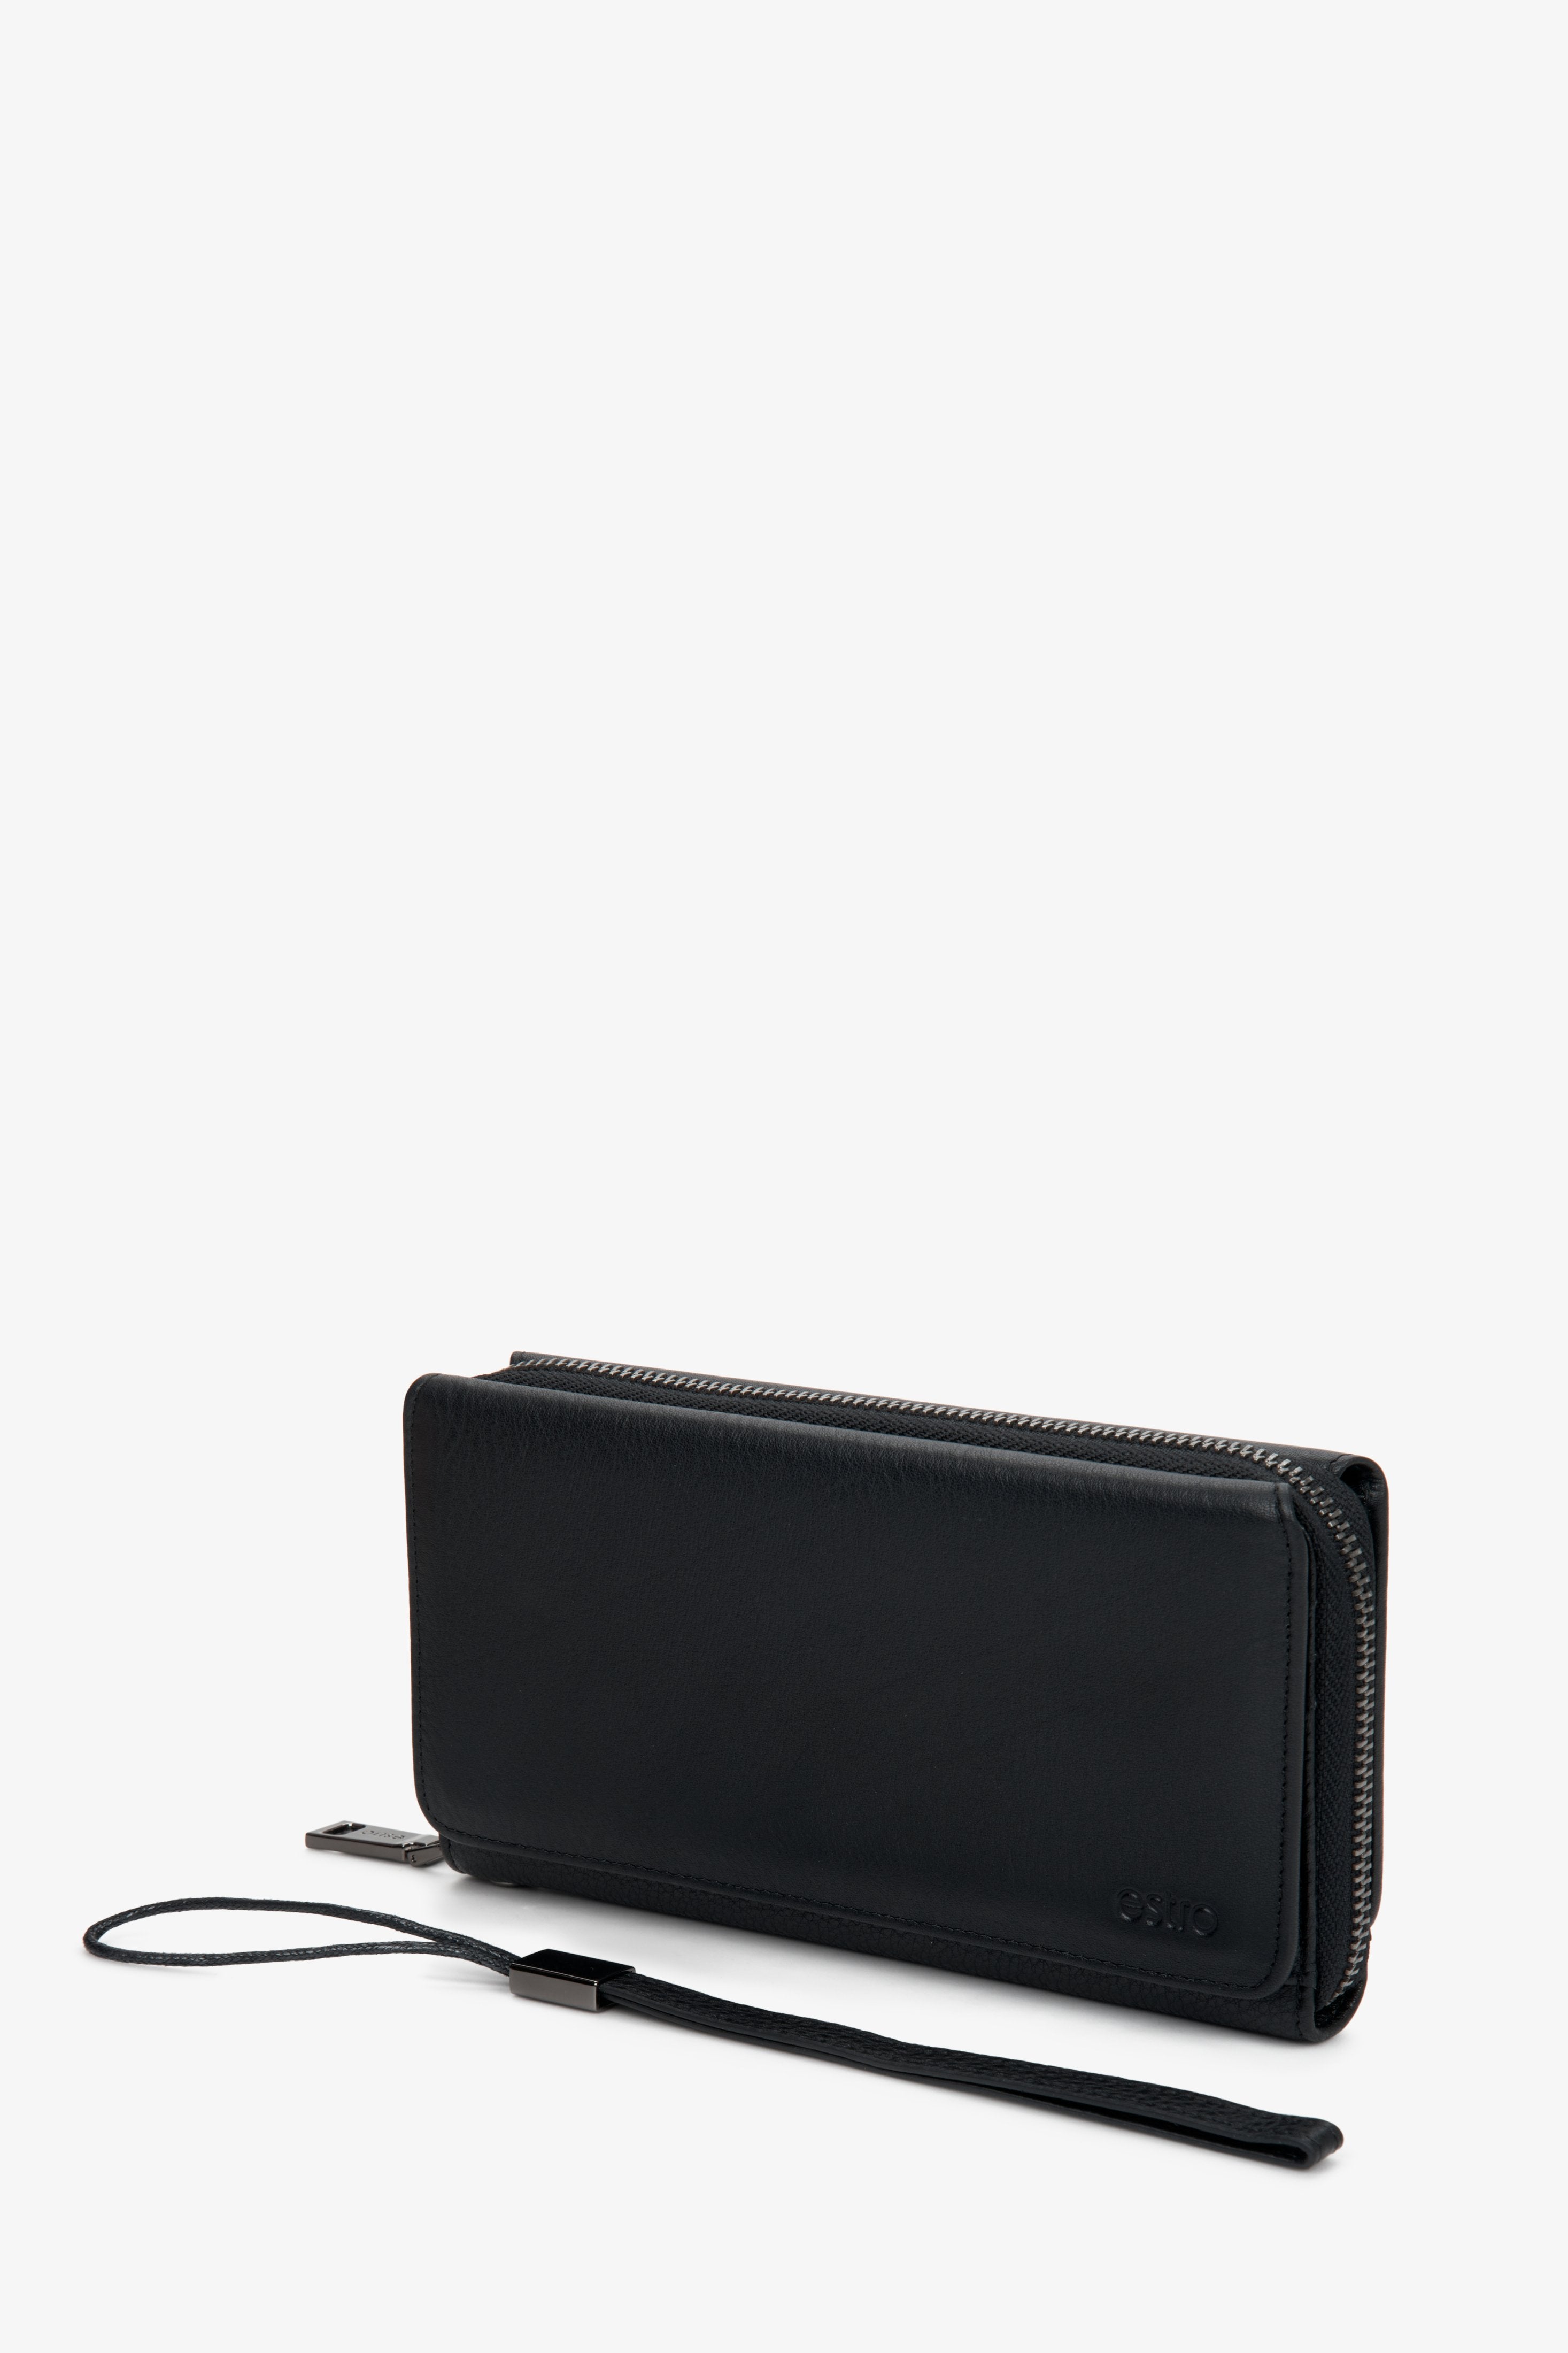 Duży skórzany portfel męski Estro w kolorze czarnym.